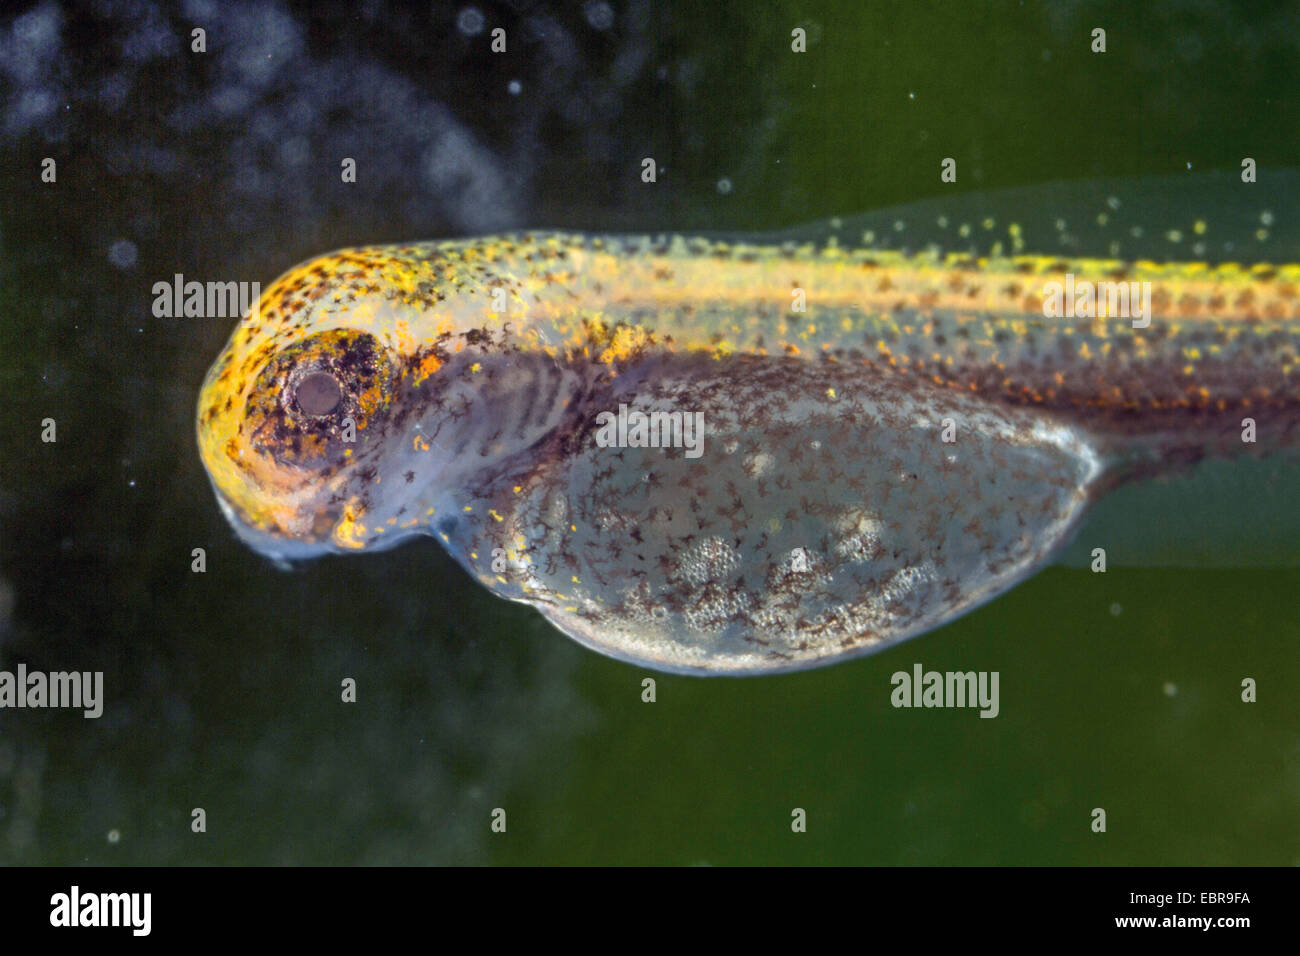 Pike, Northern Pike (Esox lucius), larva, detalle de la cabeza y yolksac, Alemania Foto de stock